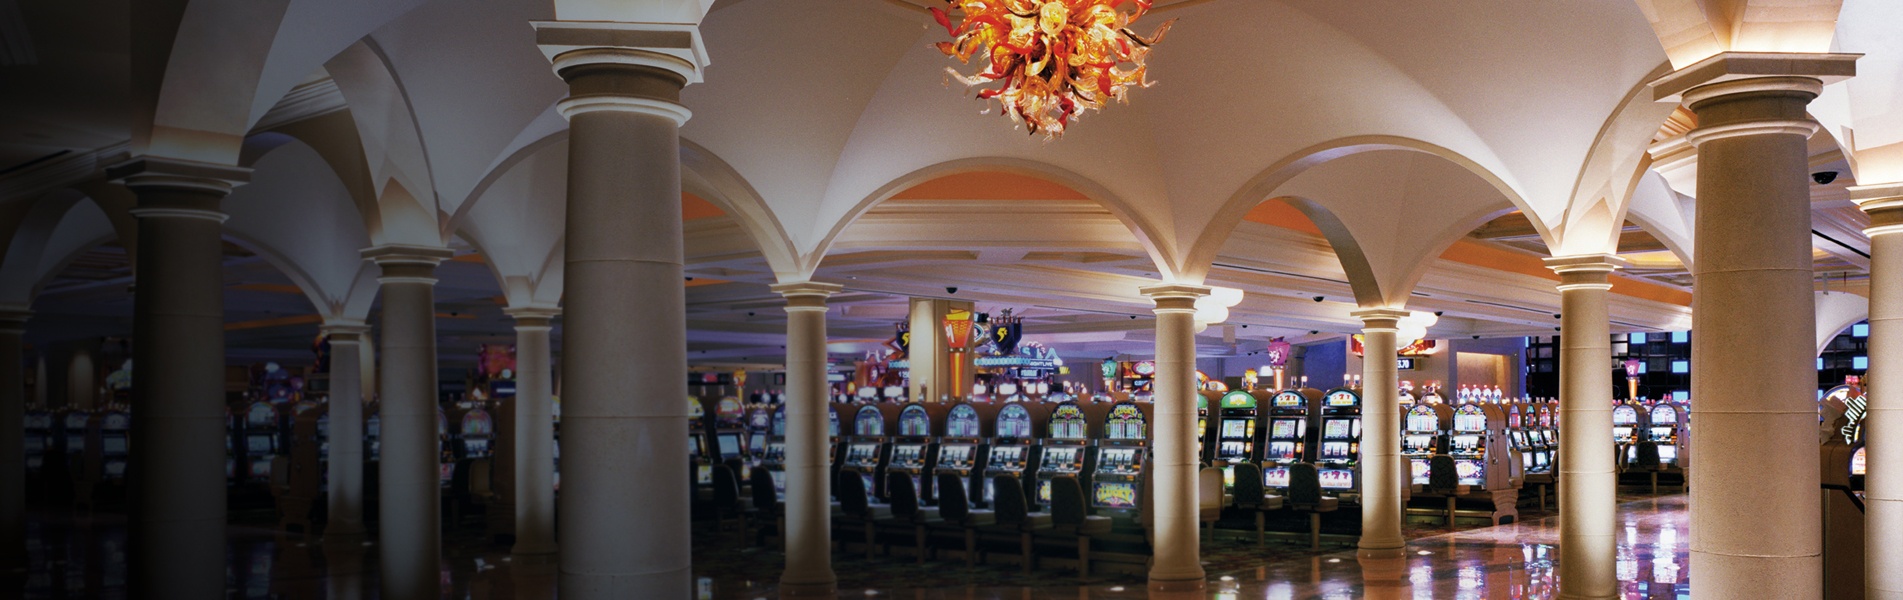 Borgata Casino Atlantic City 2